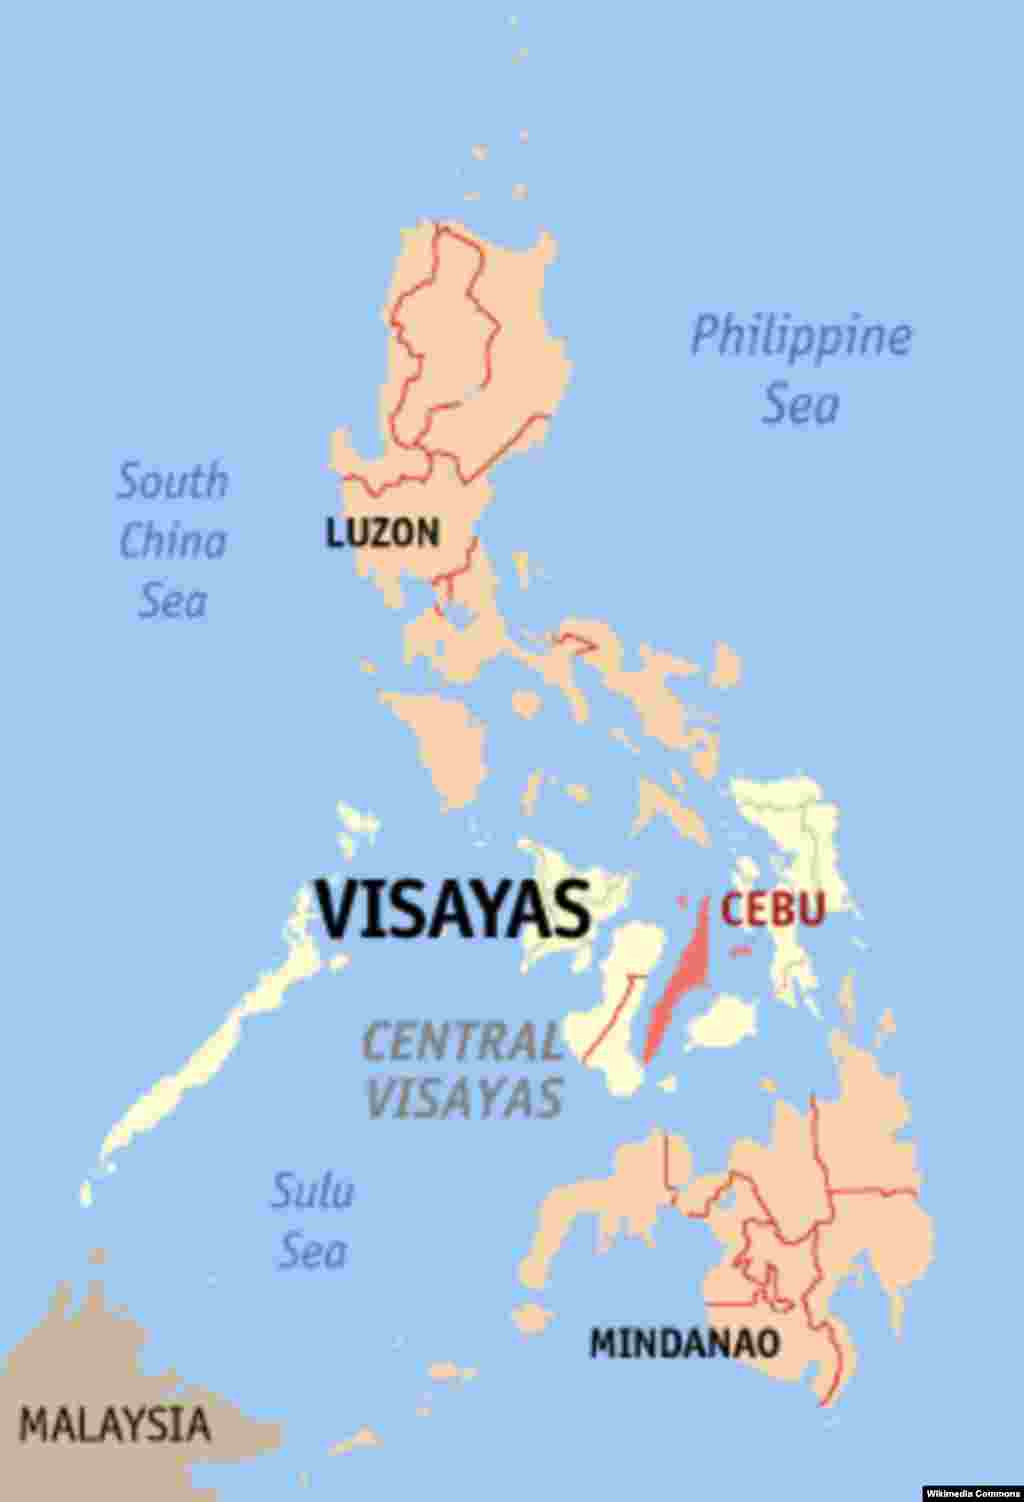 В Филиппинах объявлен "режим катастрофы", чтобы ускорить процесс помощи пострадавшим от супертайфуна "Хайян" 